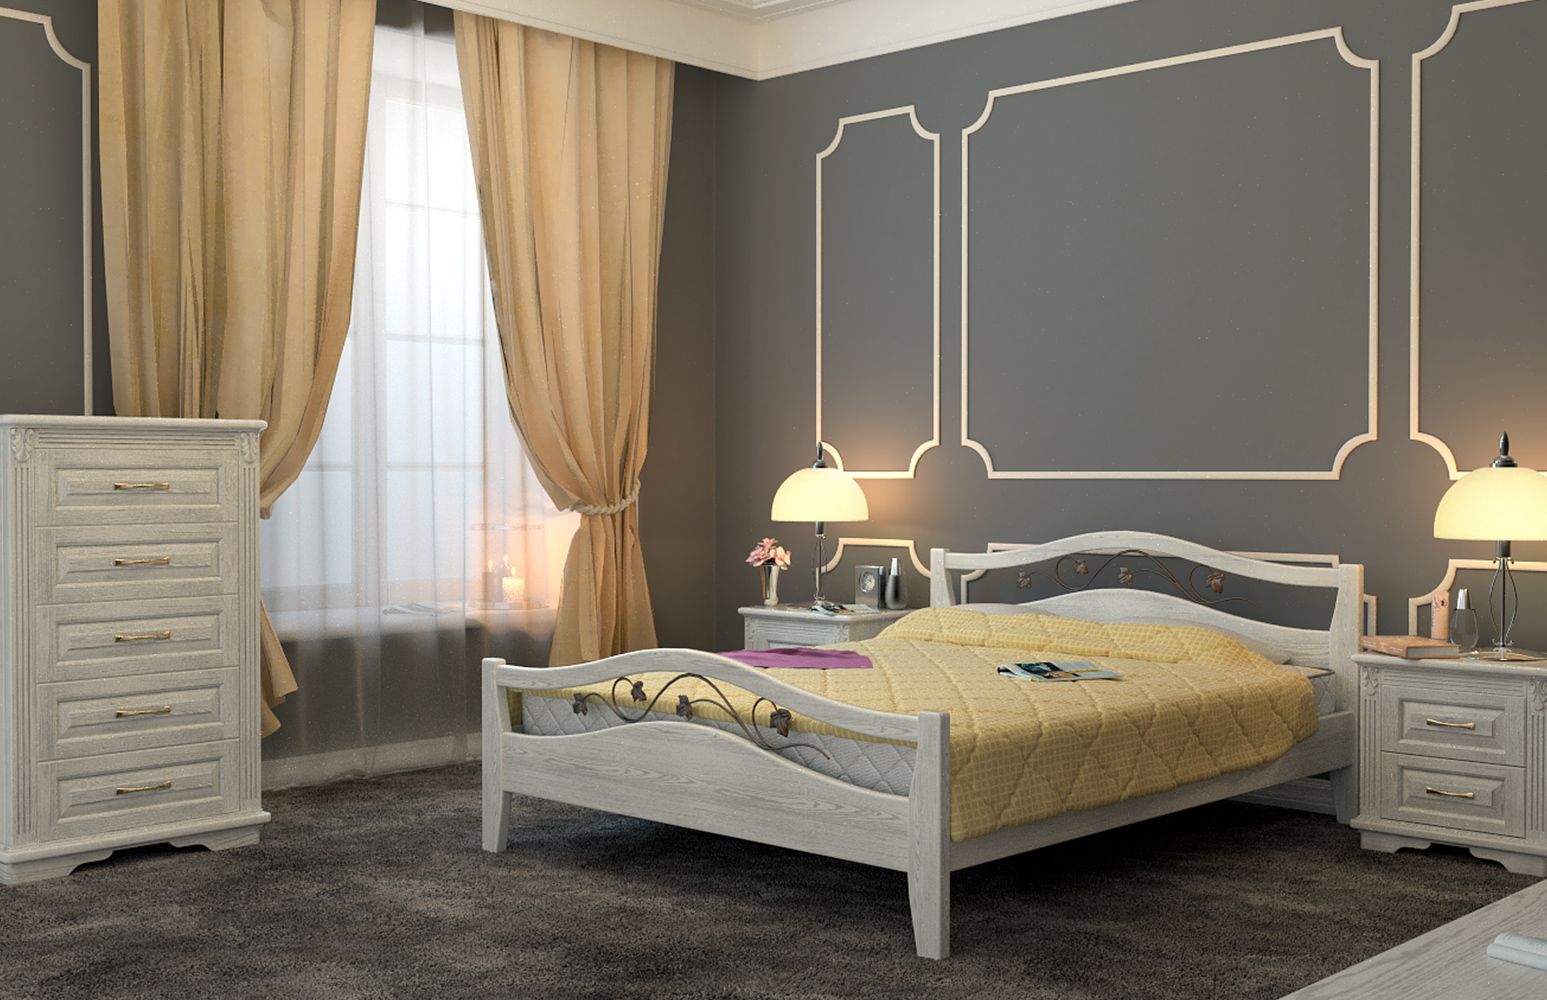 Кровать Dreamline Верона (ясень) изображен в другом виде